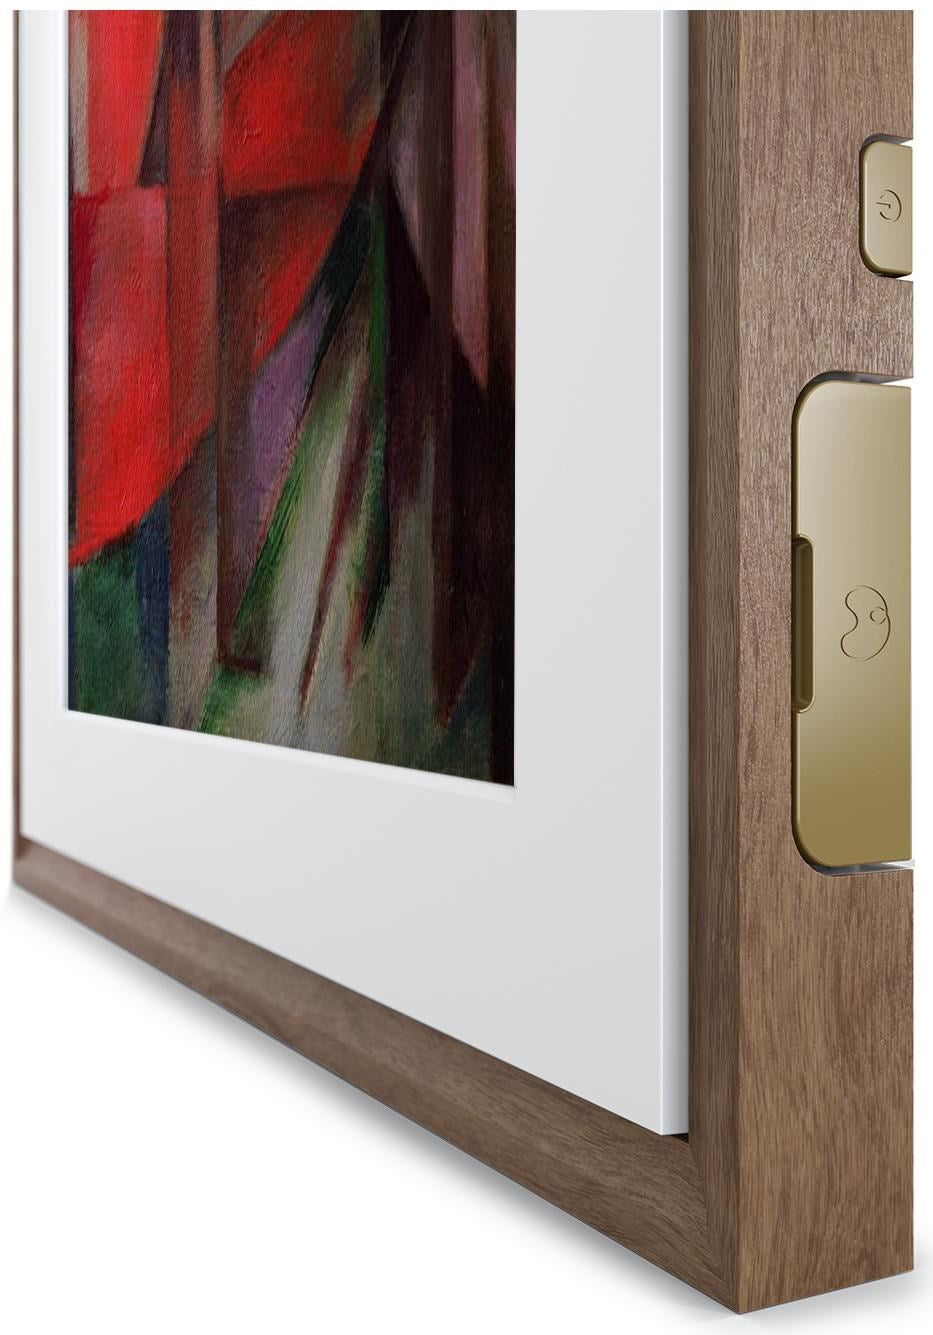 Meural MC321HW-100PAS 16x24 Canvas II Smart Art, Photo & Video Frame, Walnut